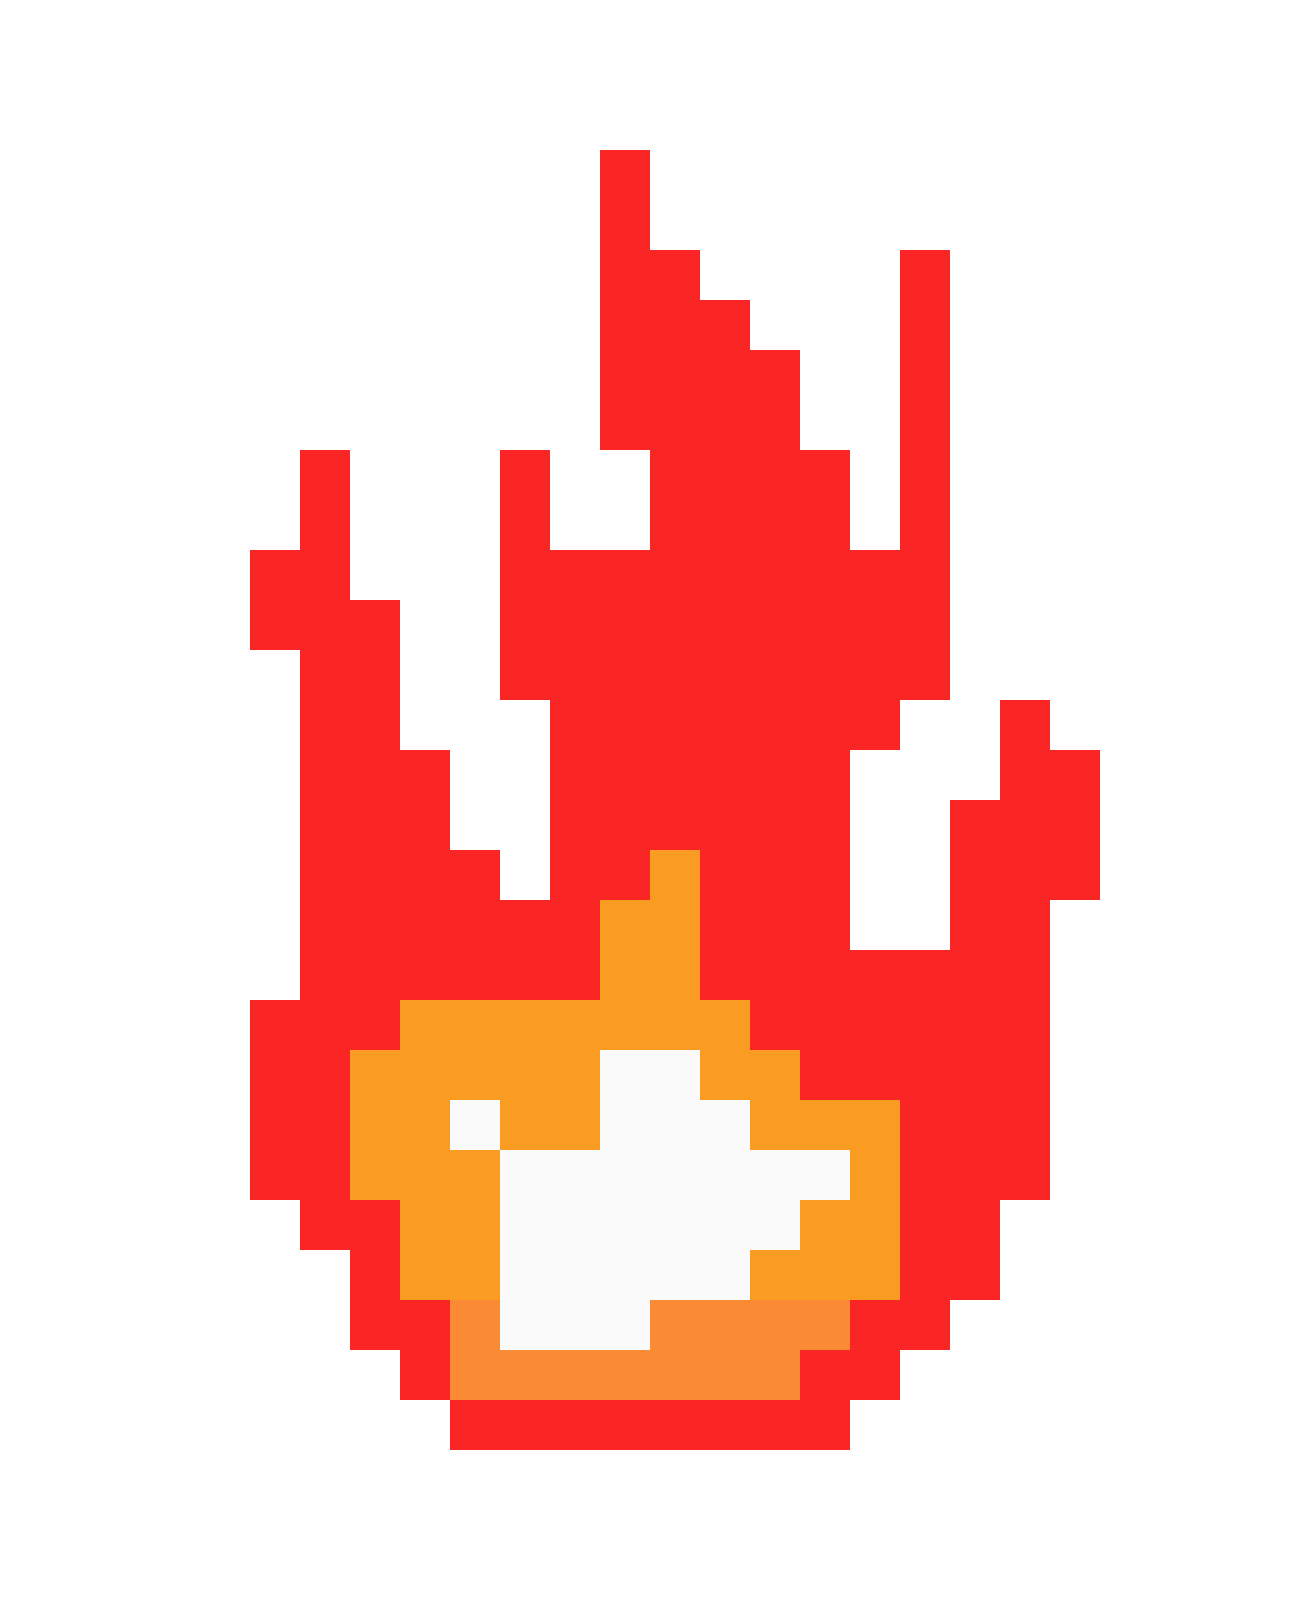 Fire Pixel Art Maker